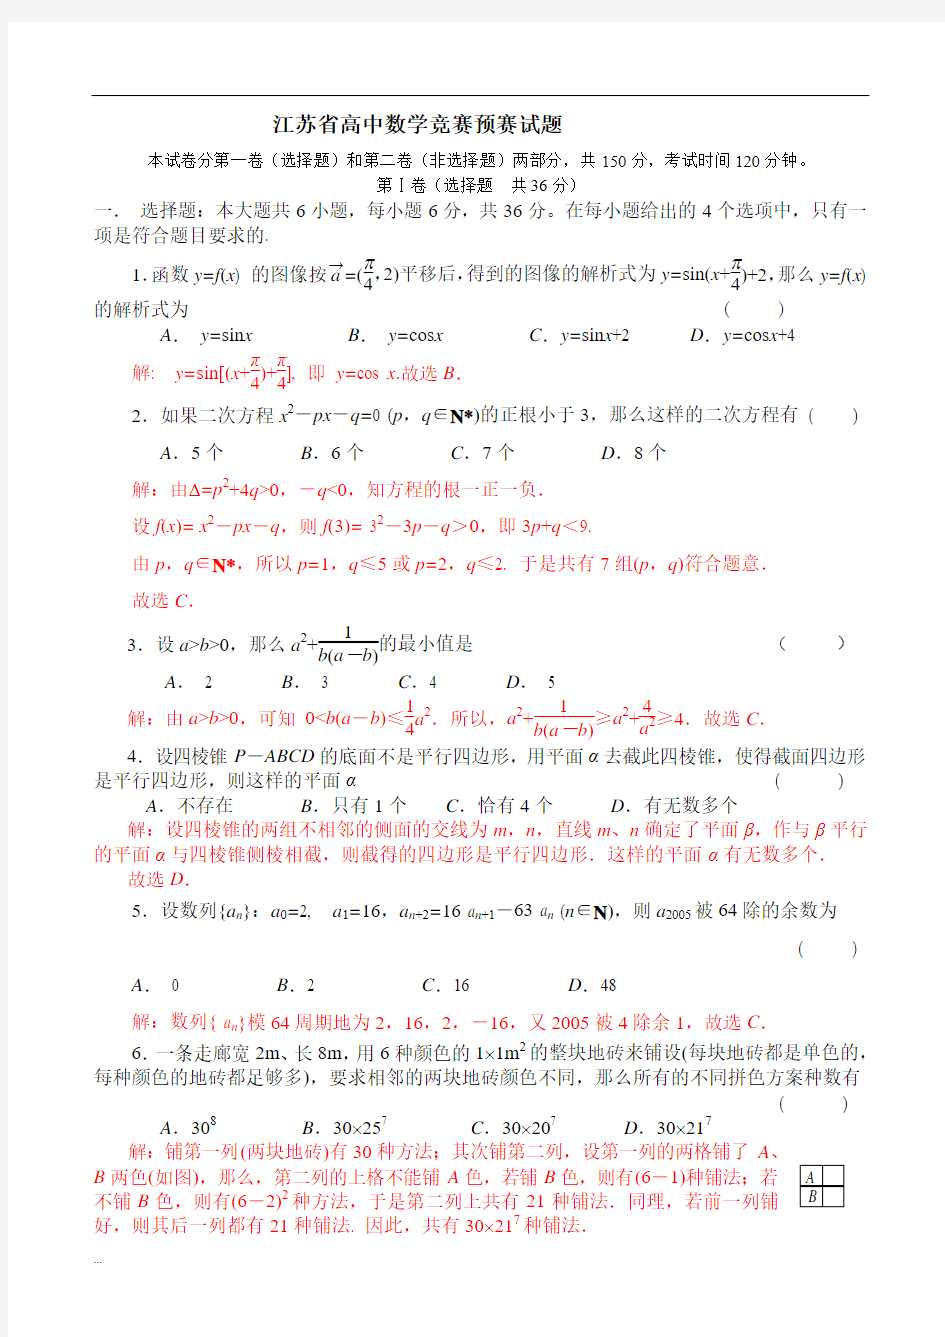 江苏省高中数学竞赛预赛试题【新版】